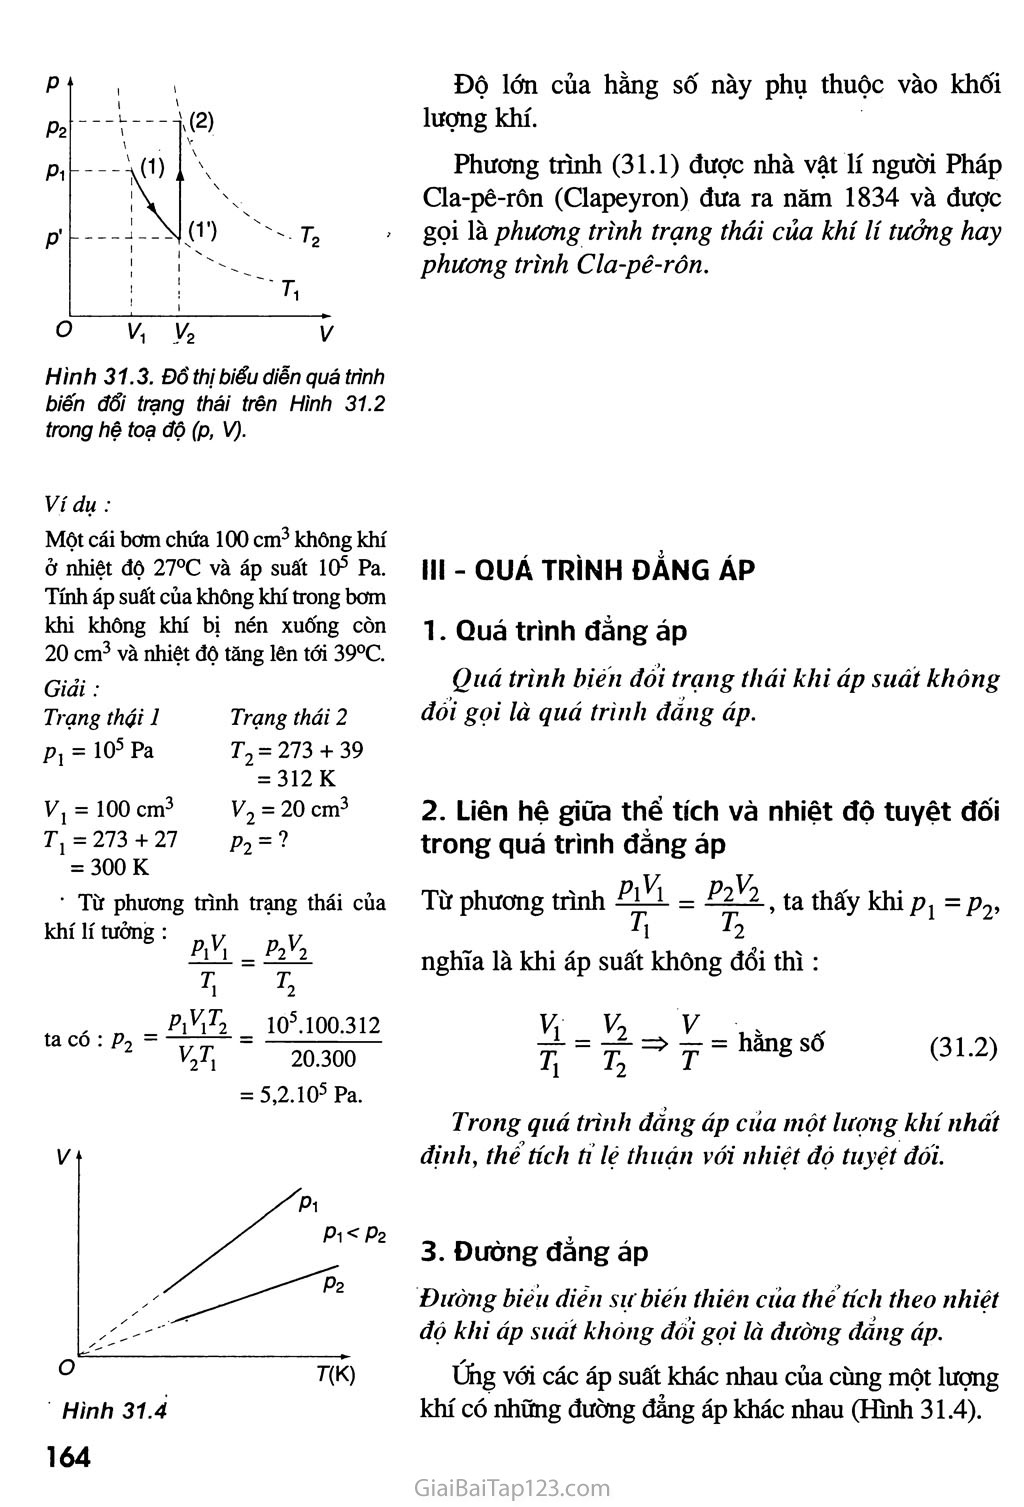 Bài 31. Phương trình trạng thái của khí lí tưởng trang 2